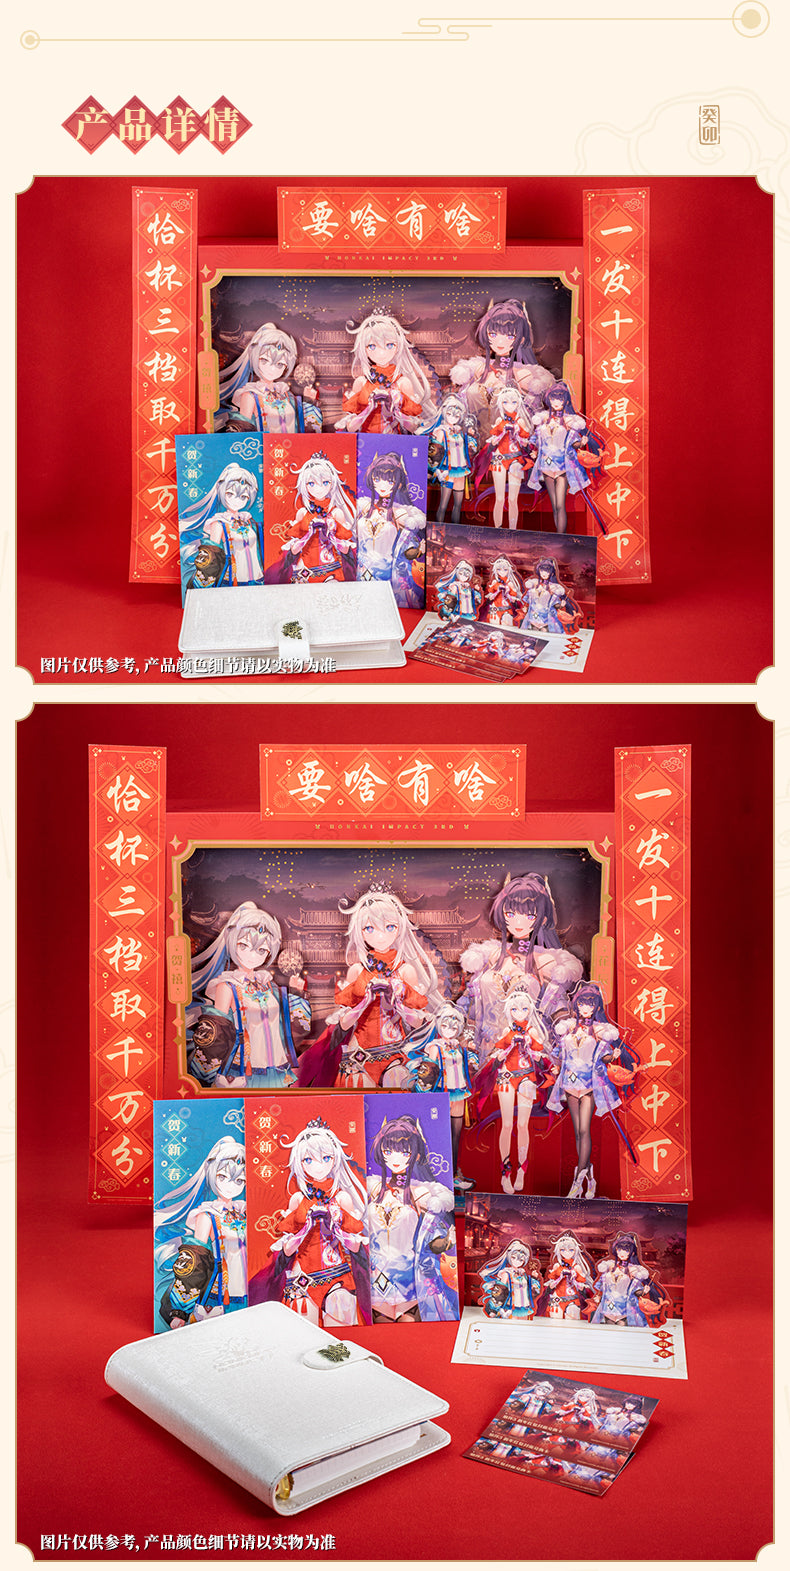 Honkai Impact 3rd - 2023 Chinese New Year Gift Box